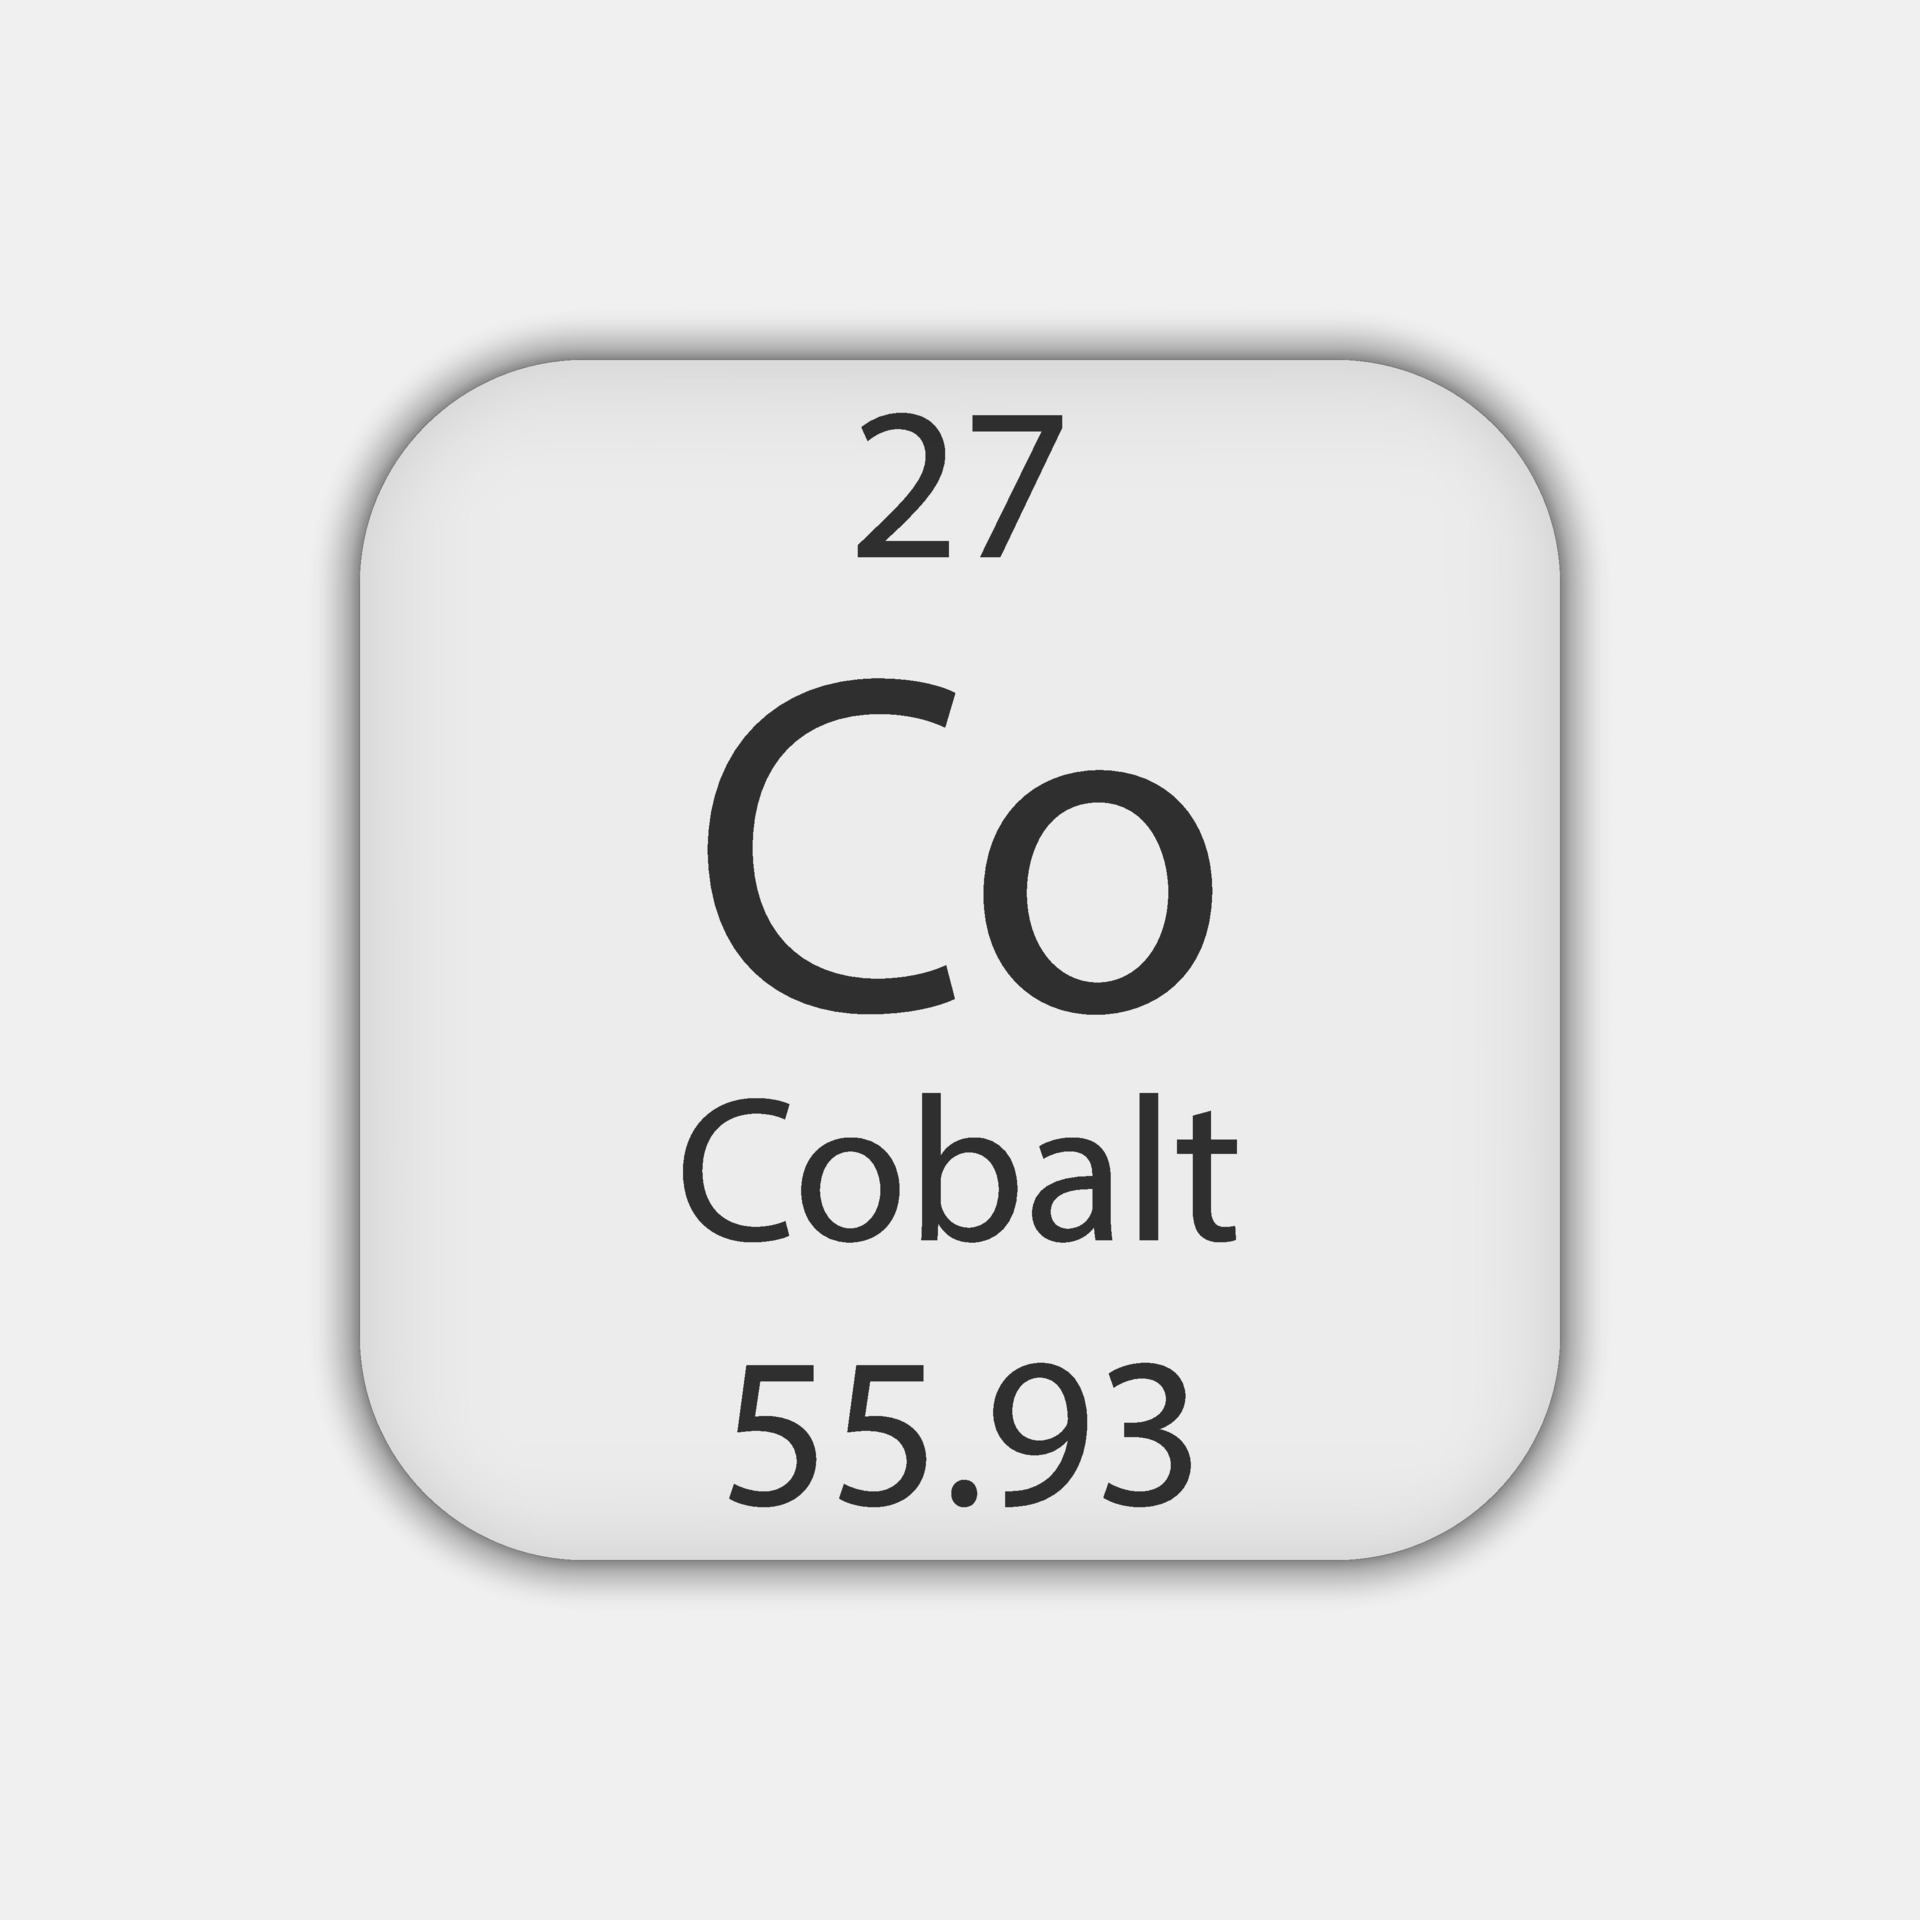 Cobalto em eritrita  Imagens da Tabela Periódica